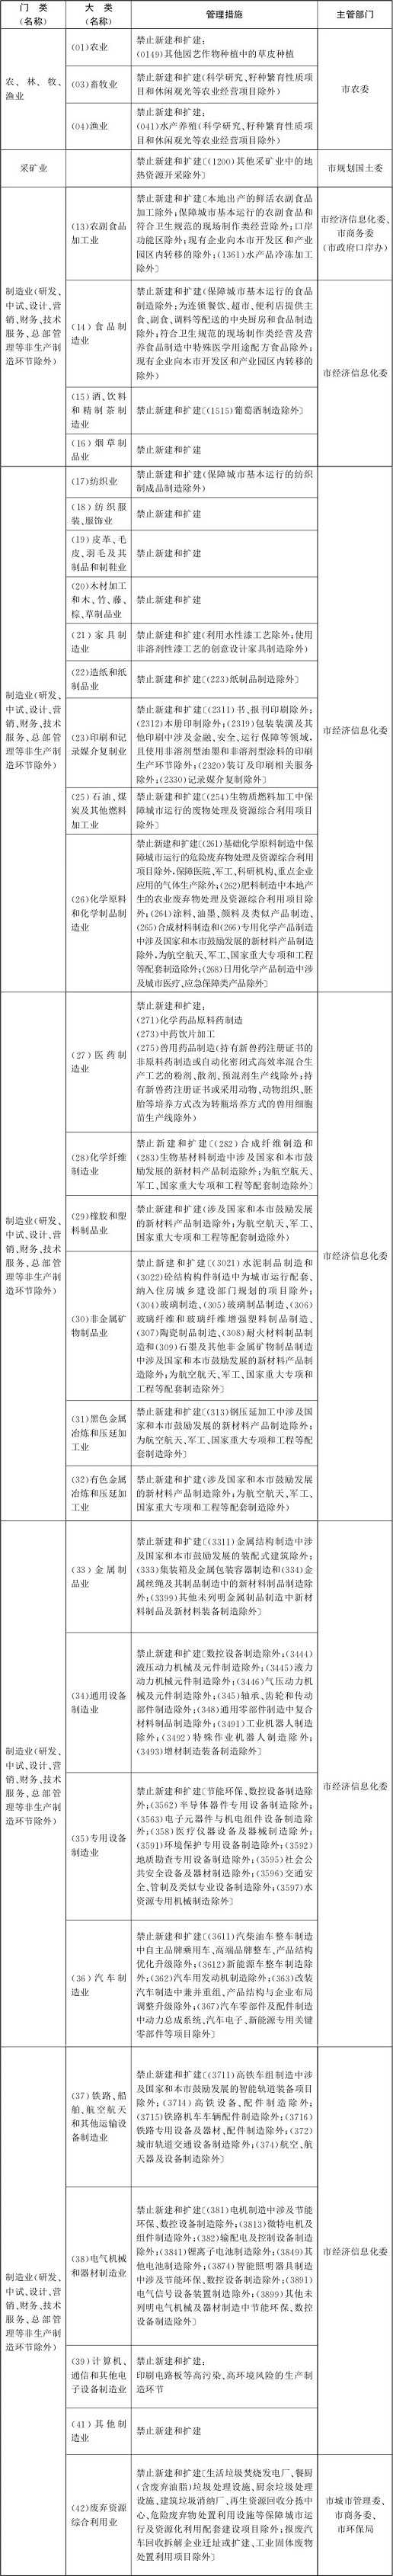 北京市新增产业的禁止和限制目录(一)1